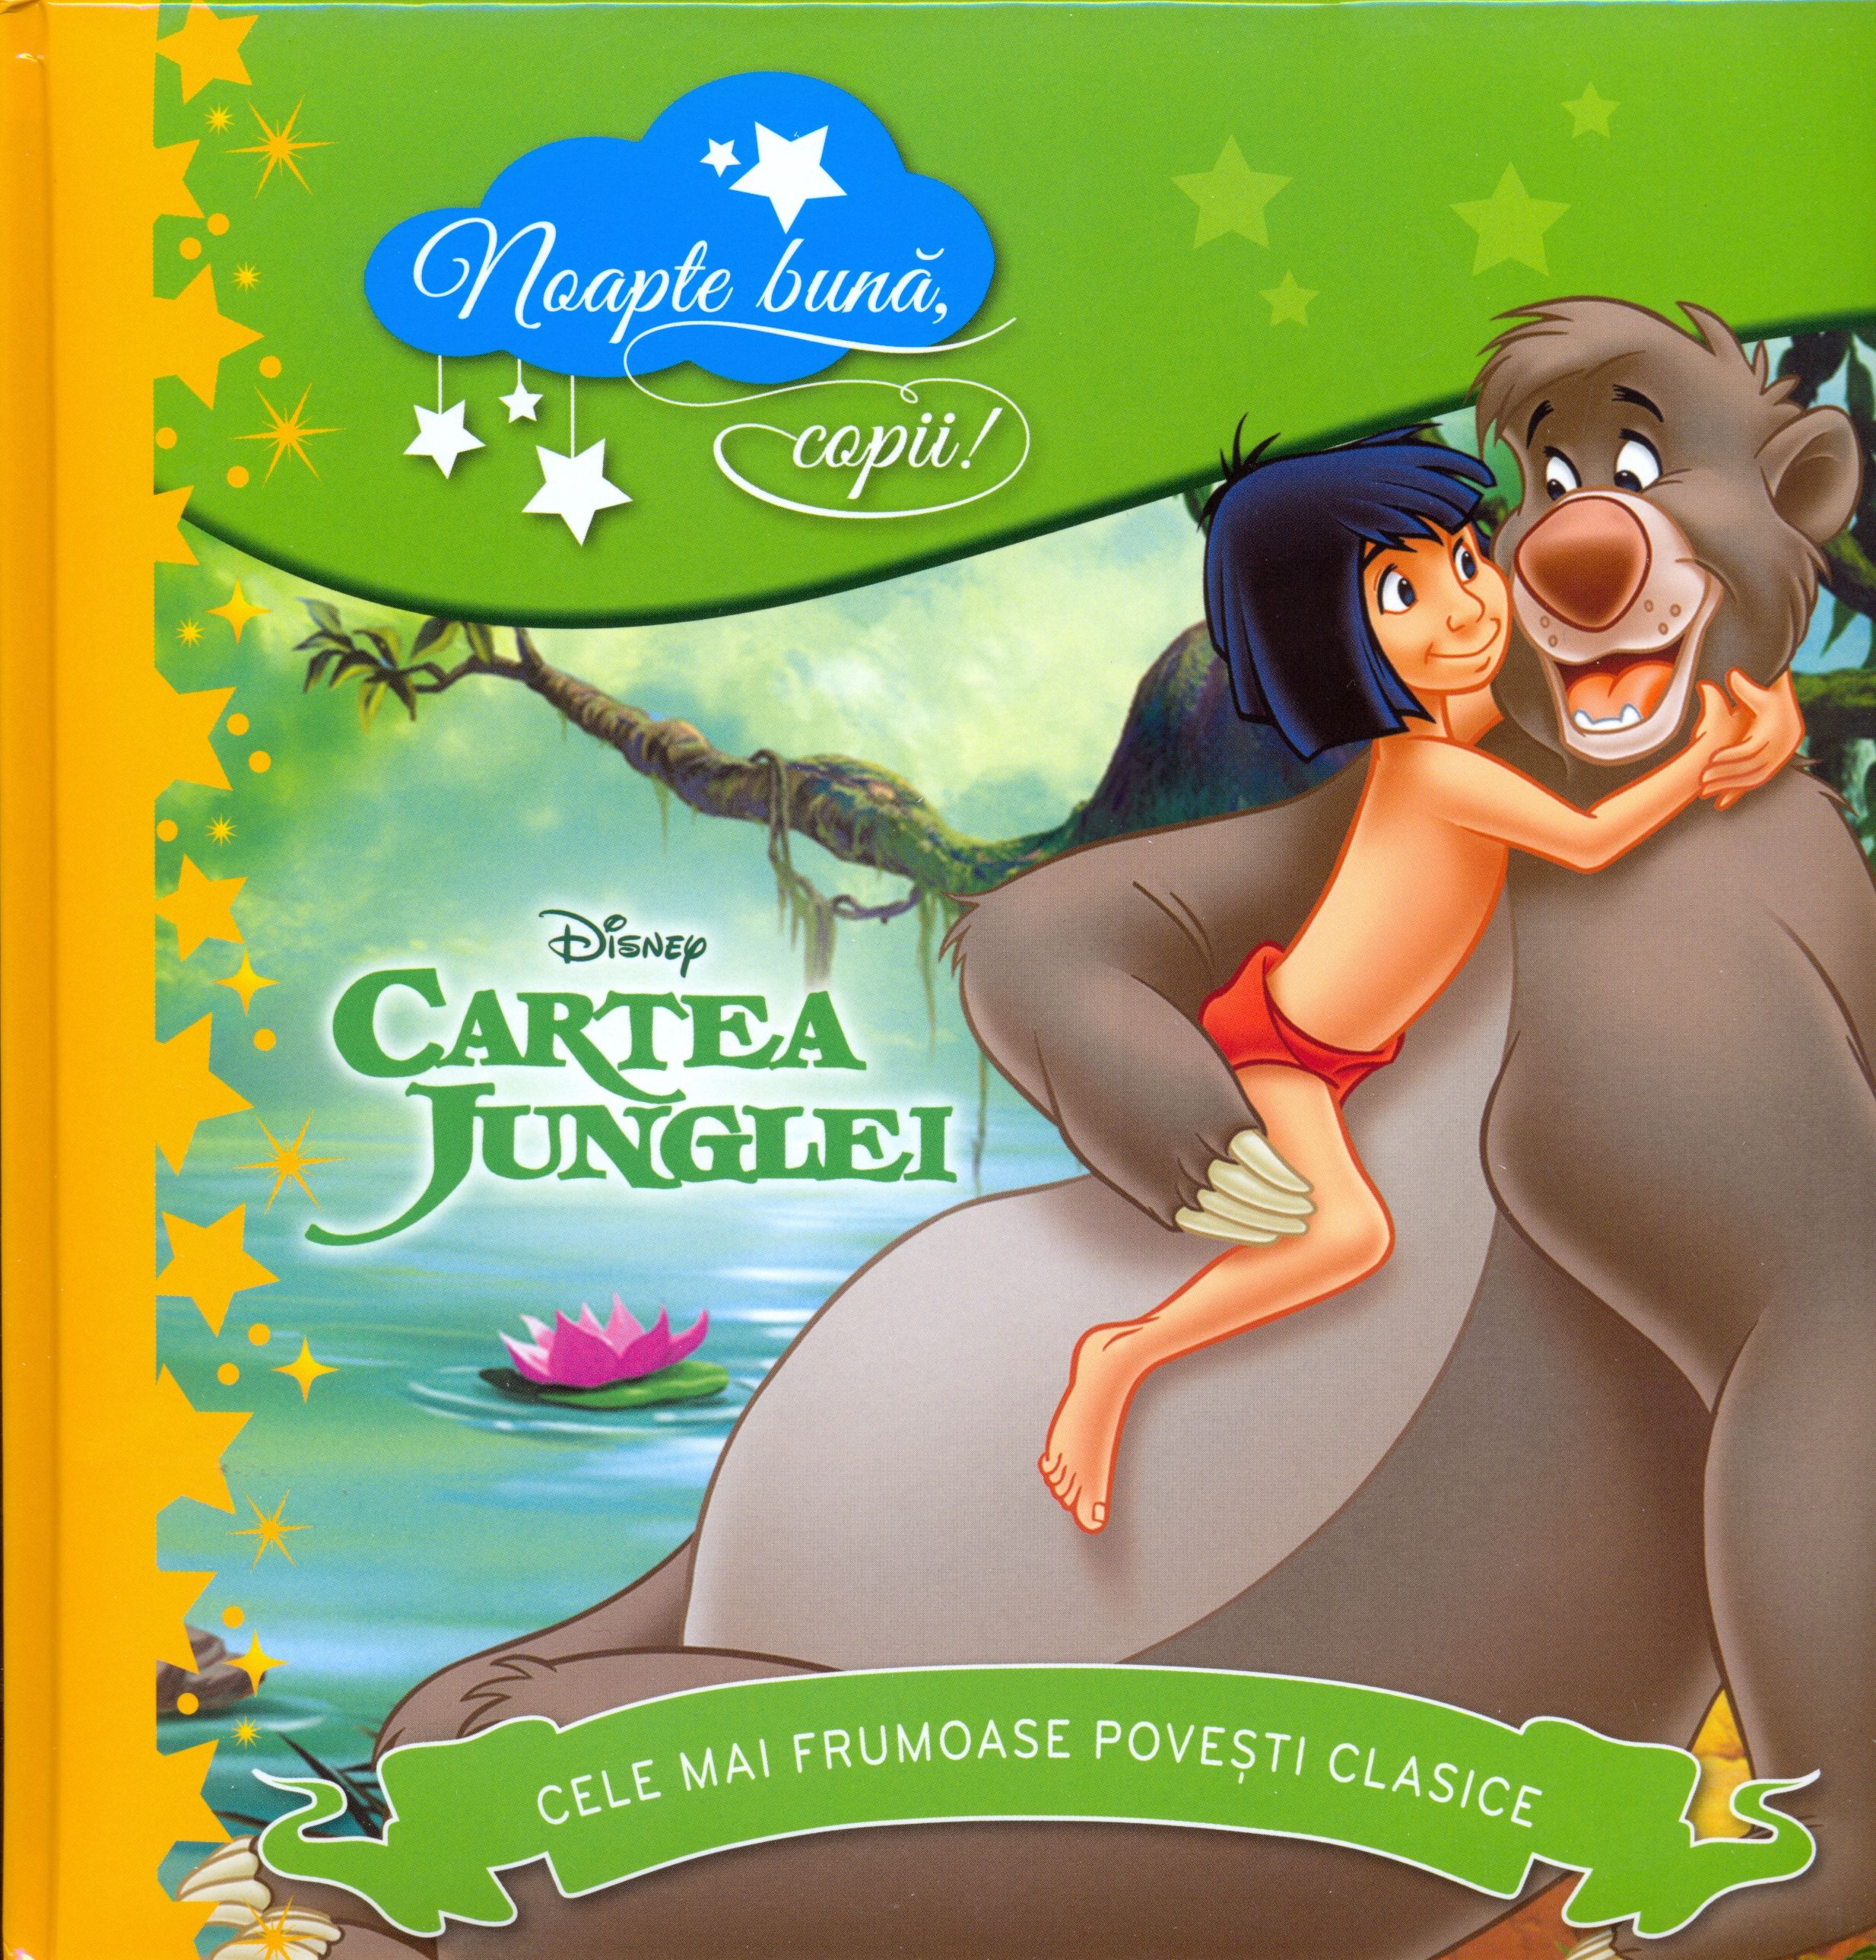 Cartea junglei. Noapte buna, copii! | Disney